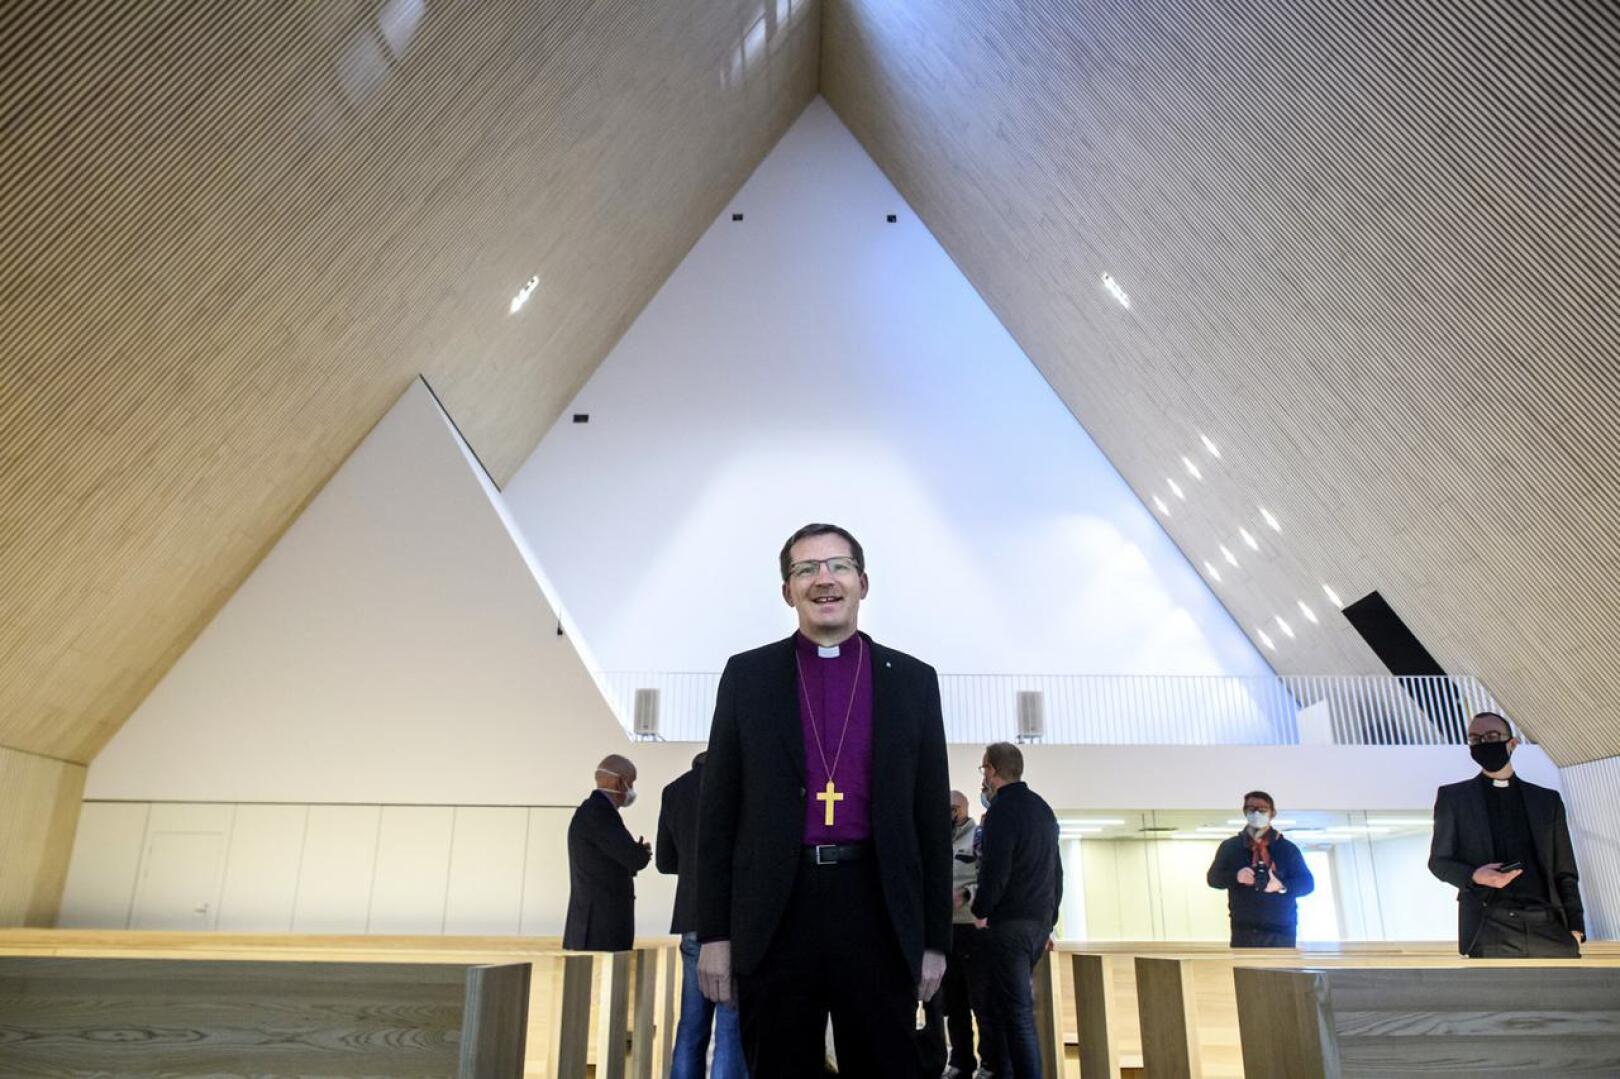 Piispa Jukka Keskitalo tutustui Ylivieskan uuteen kirkkoon helmikuussa. Sunnuntaina 4. huhtikuuta hän vihkii kirkon käyttöön.